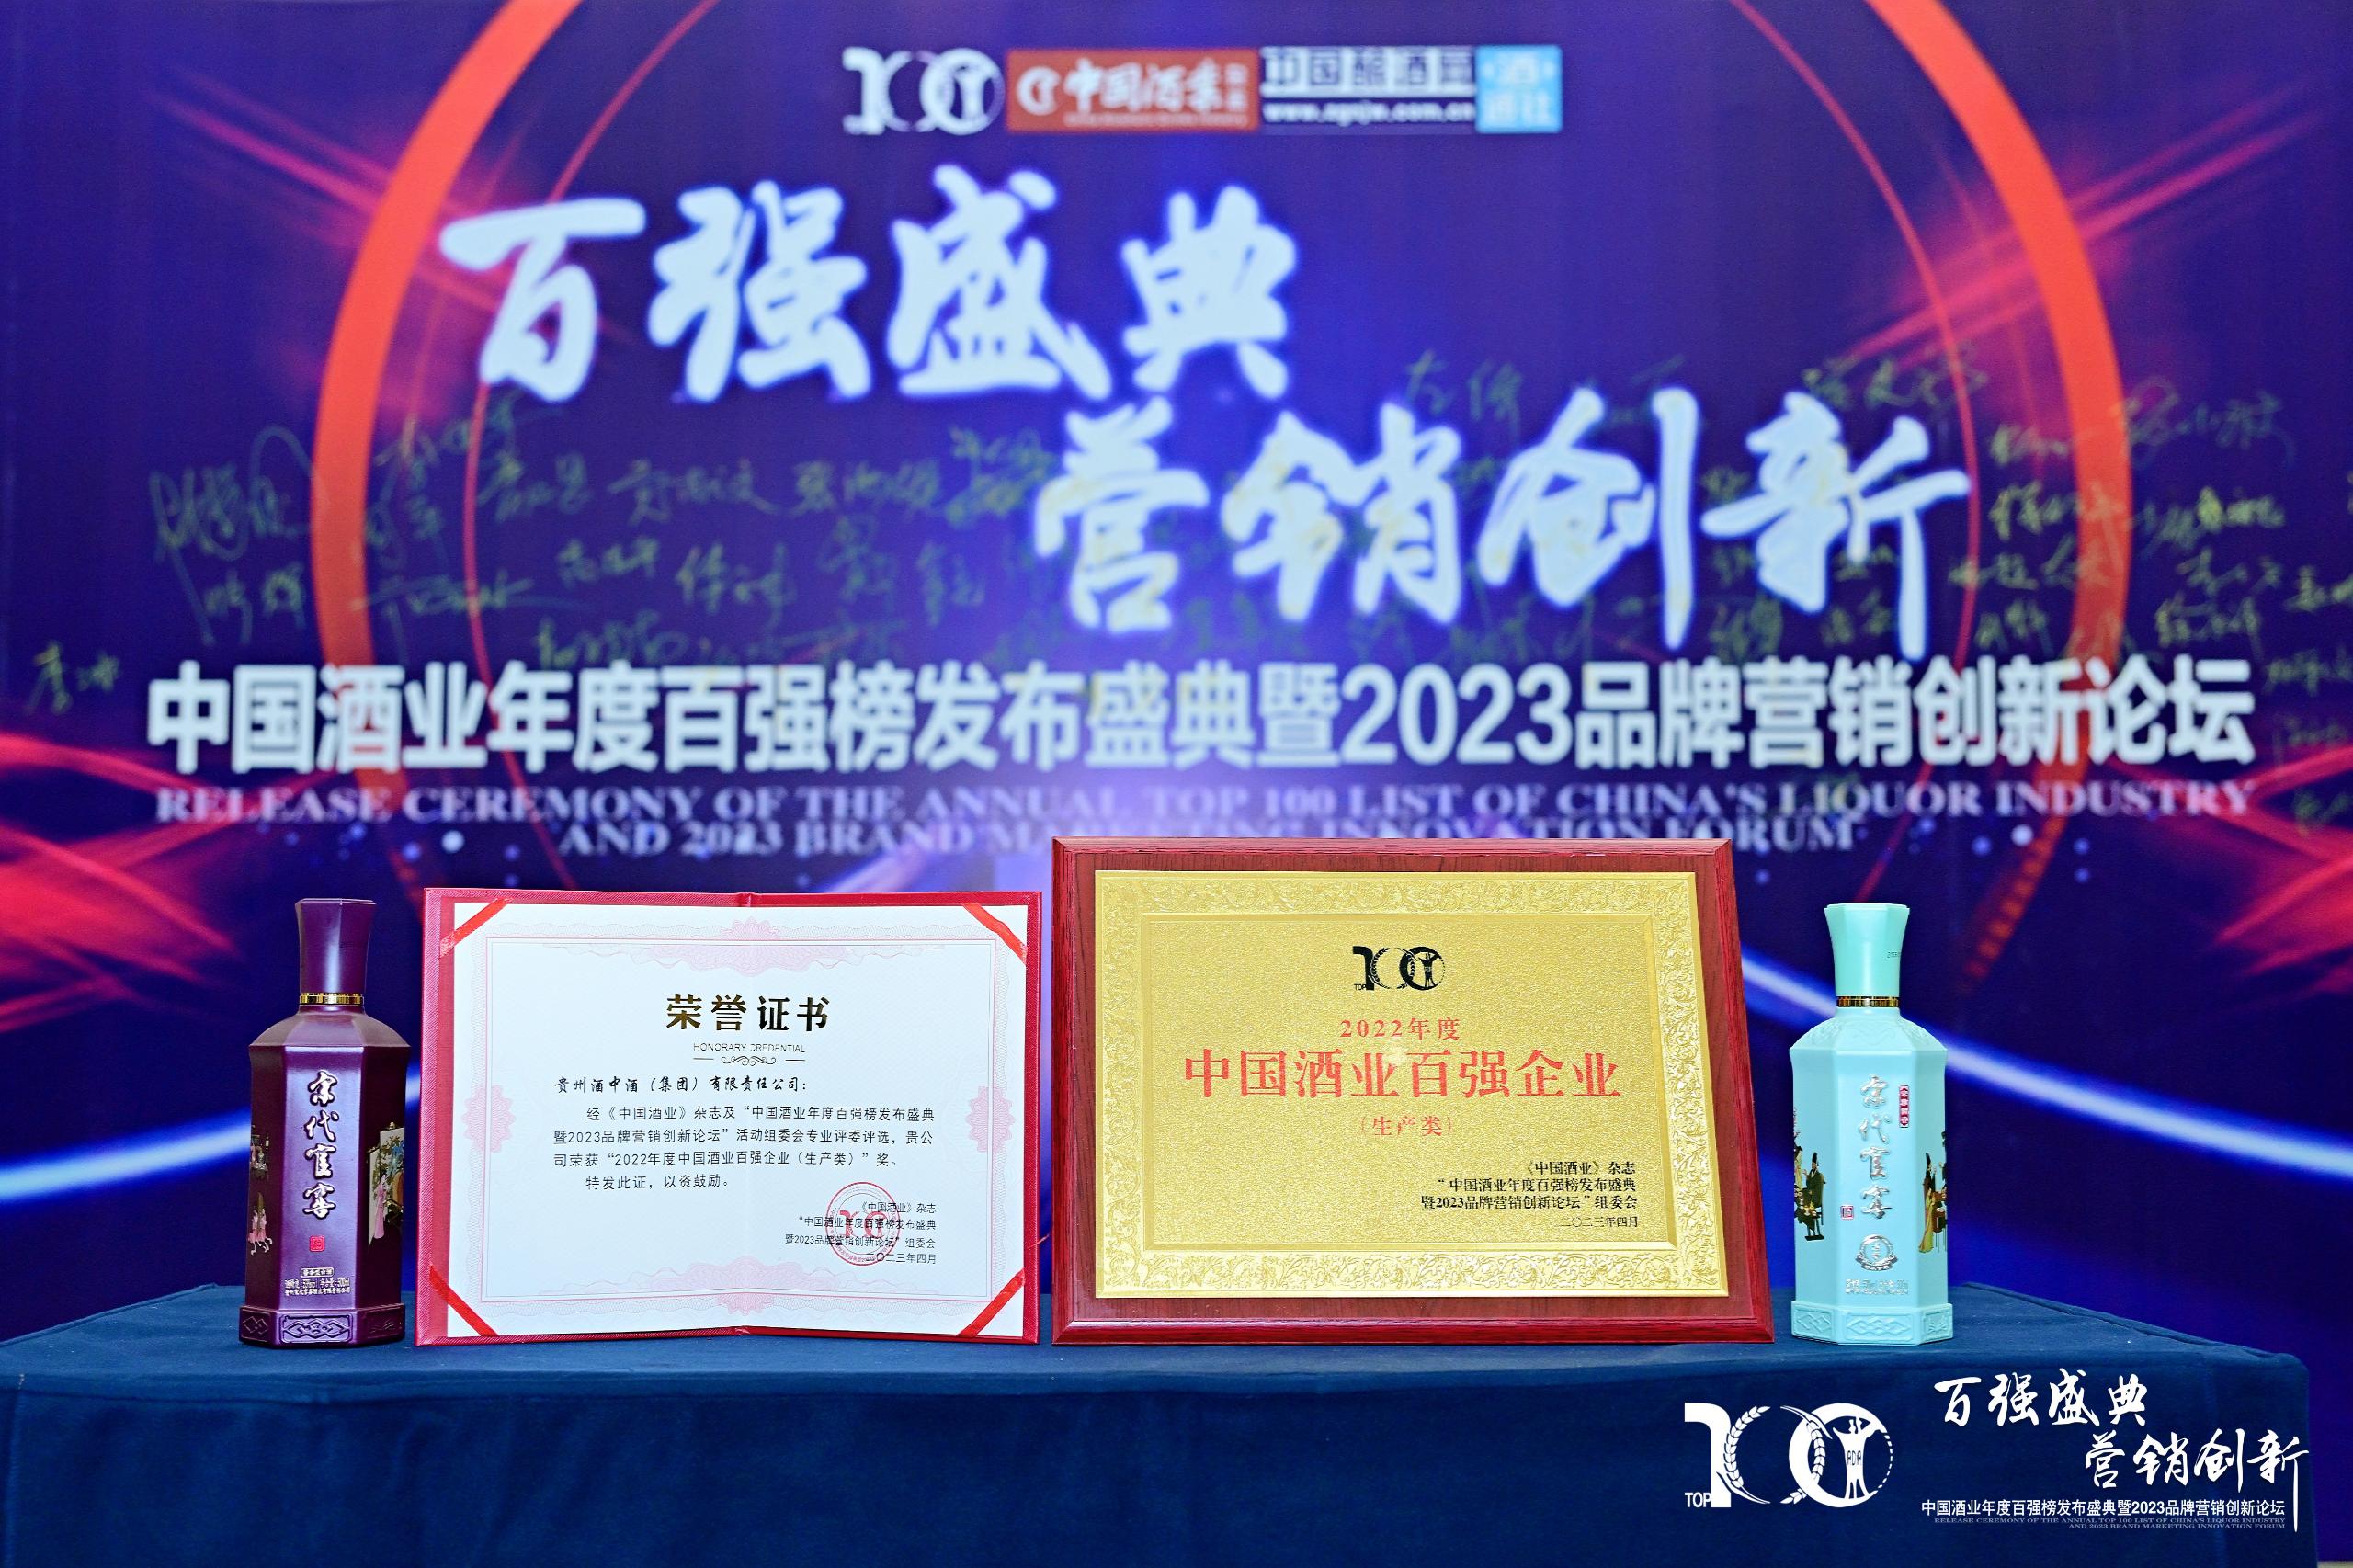 中国酒业年度百强榜发布盛典暨2023品牌营销创新论坛